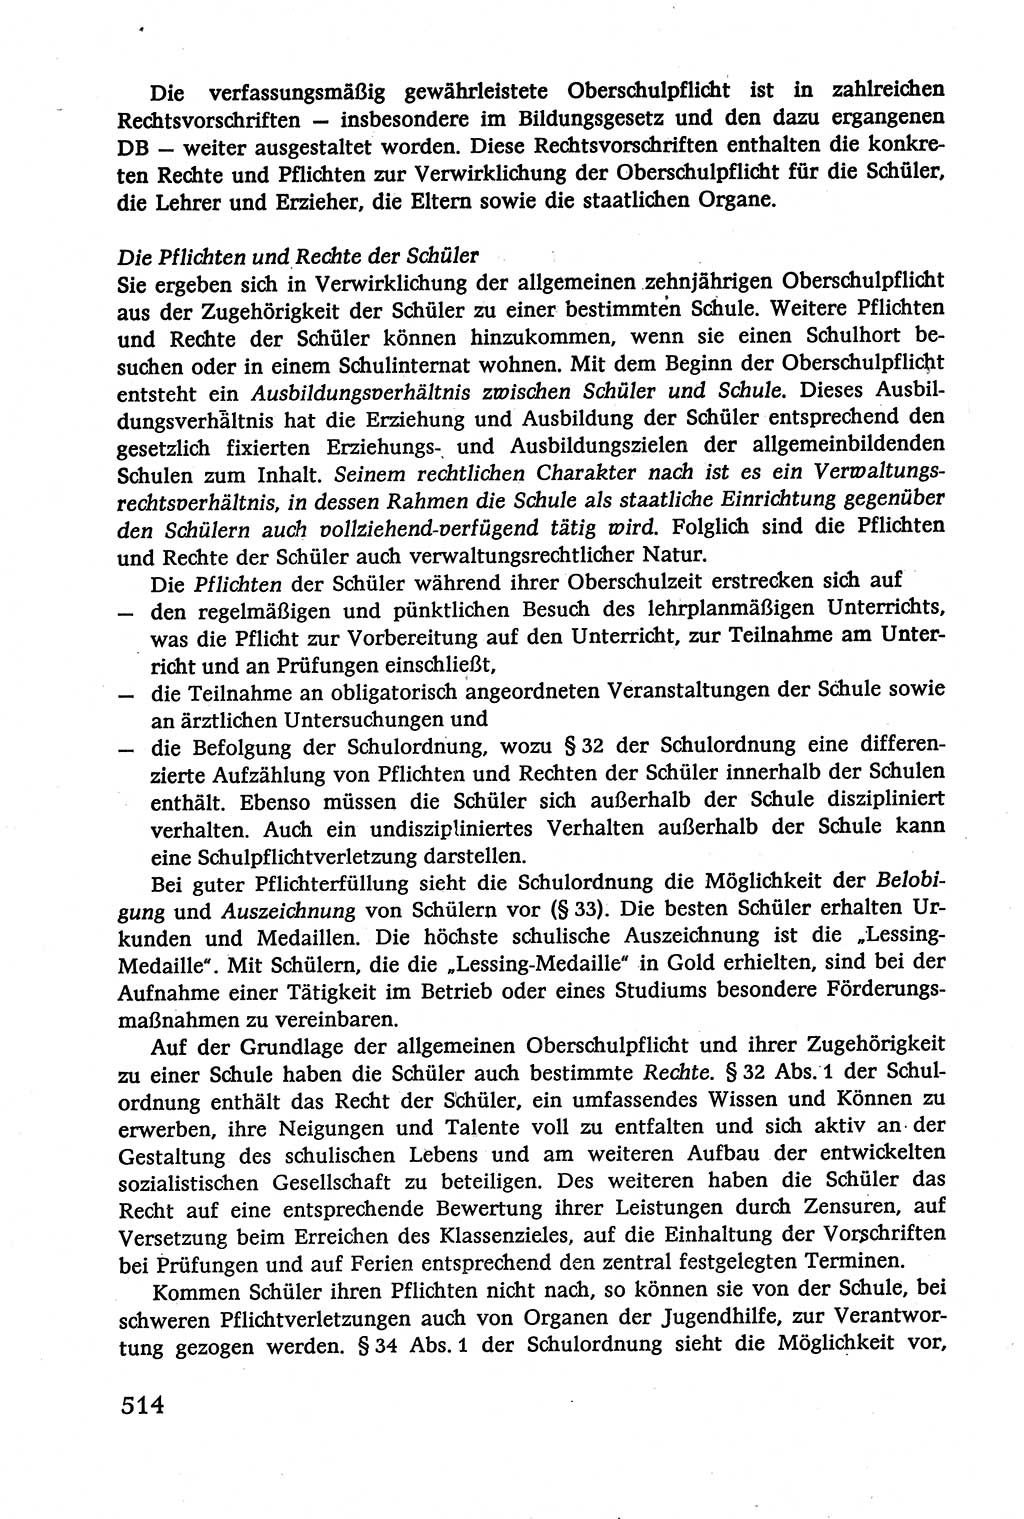 Verwaltungsrecht [Deutsche Demokratische Republik (DDR)], Lehrbuch 1979, Seite 514 (Verw.-R. DDR Lb. 1979, S. 514)